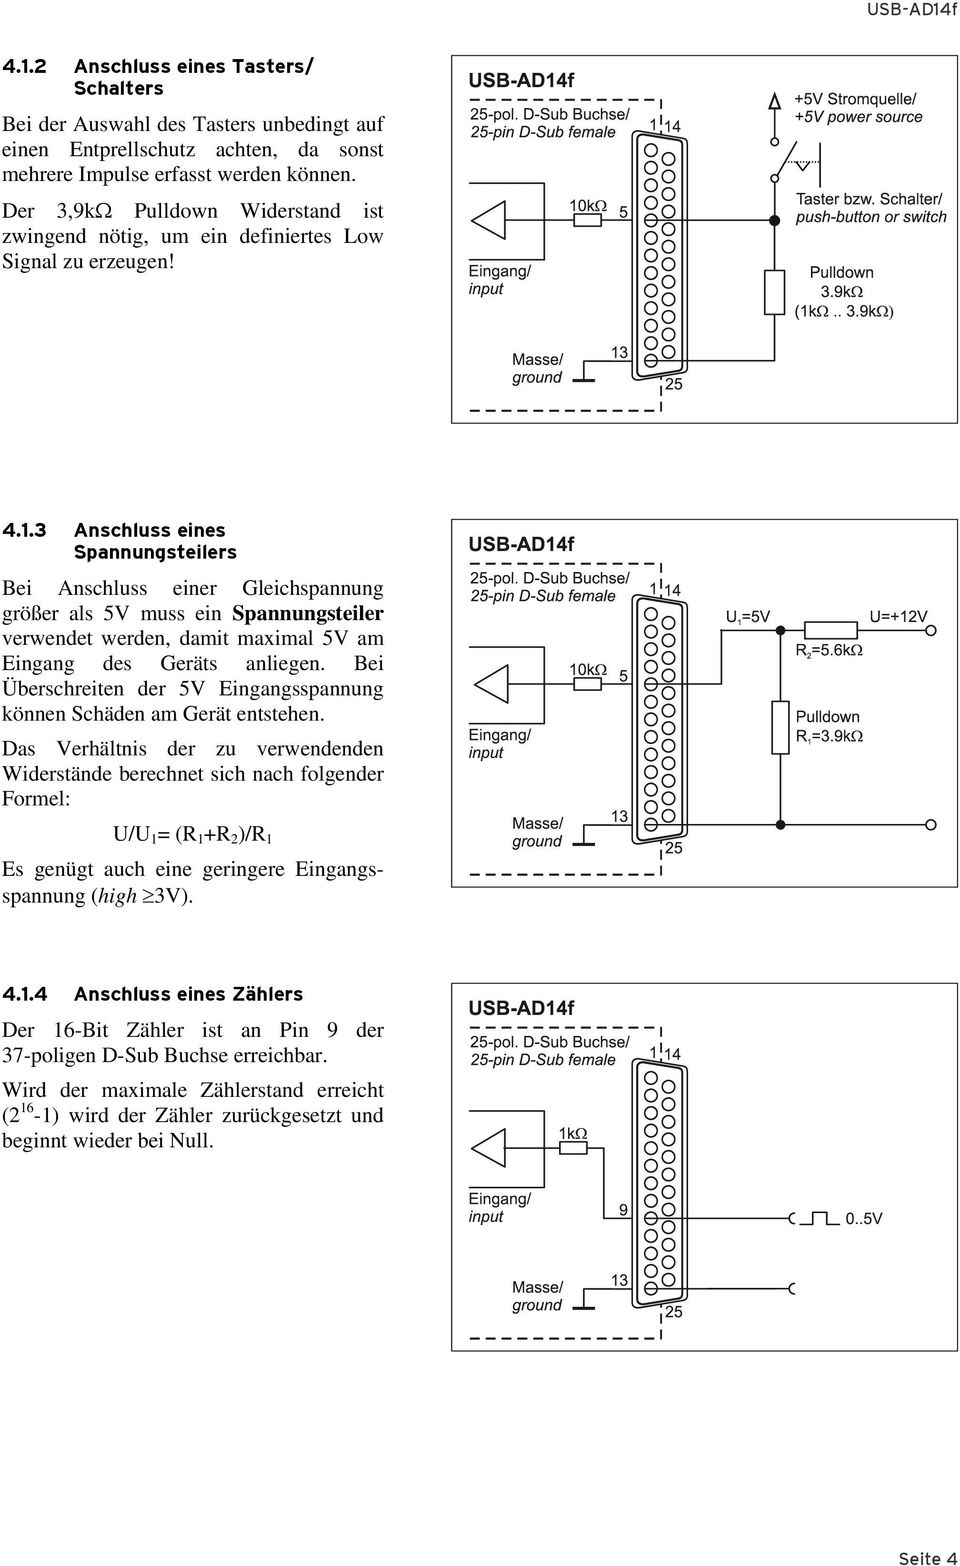 3 Anschluss eines Spannungsteilers Bei Anschluss einer Gleichspannung größer als 5V muss ein Spannungsteiler verwendet werden, damit maximal 5V am Eingang des Geräts anliegen.